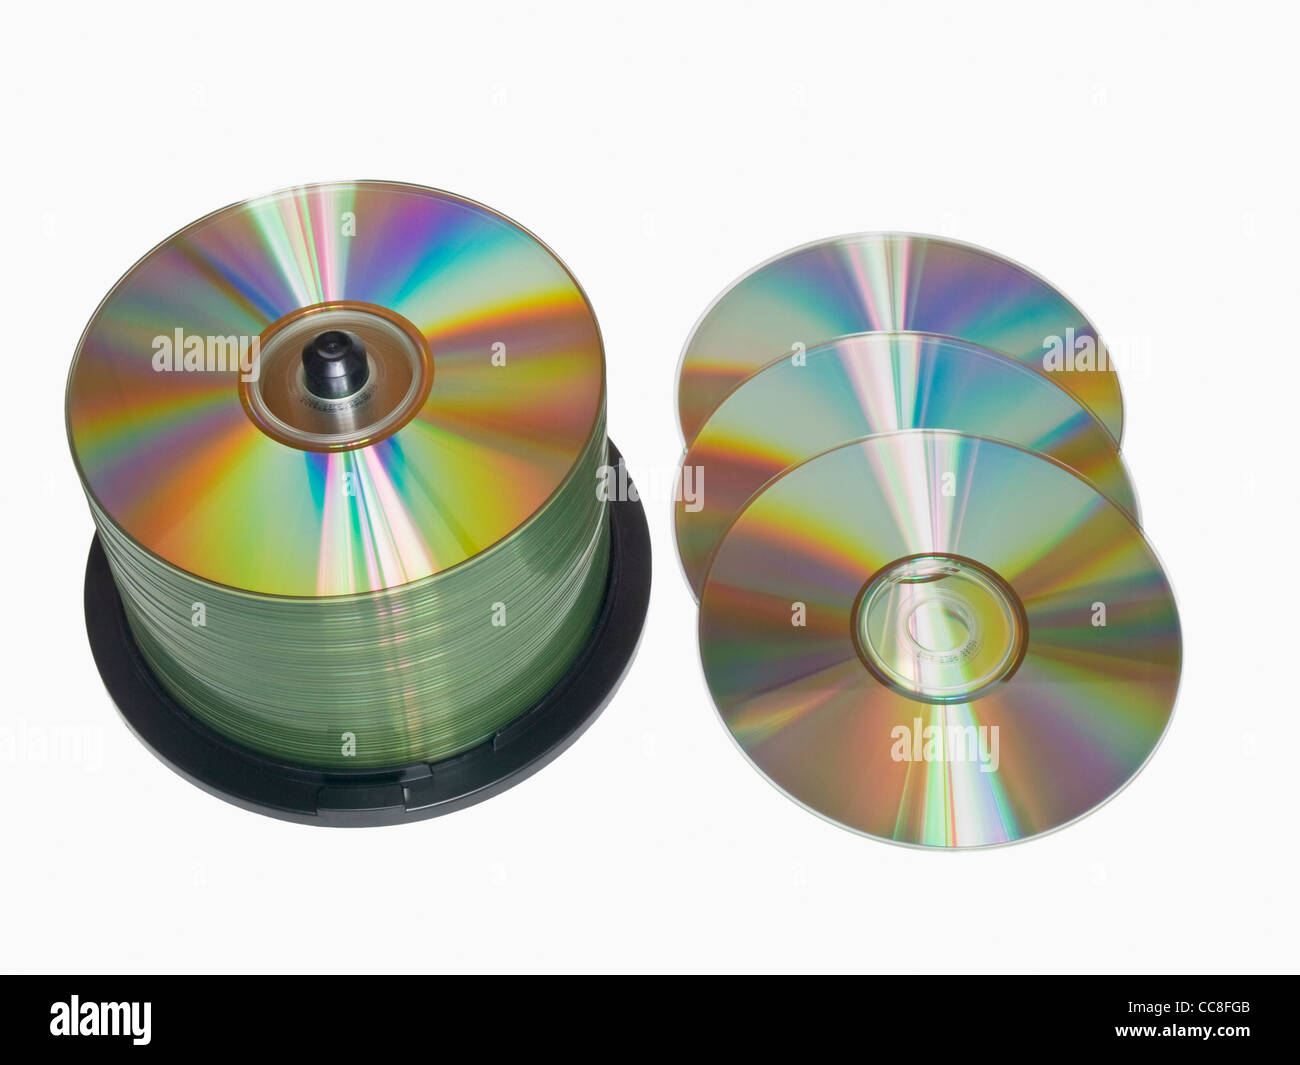 Detailansicht einer CD-Spindel, daneben liegen drei CDs | Detalle foto de un CD-pack, al lado están los CDs de árbol Foto de stock